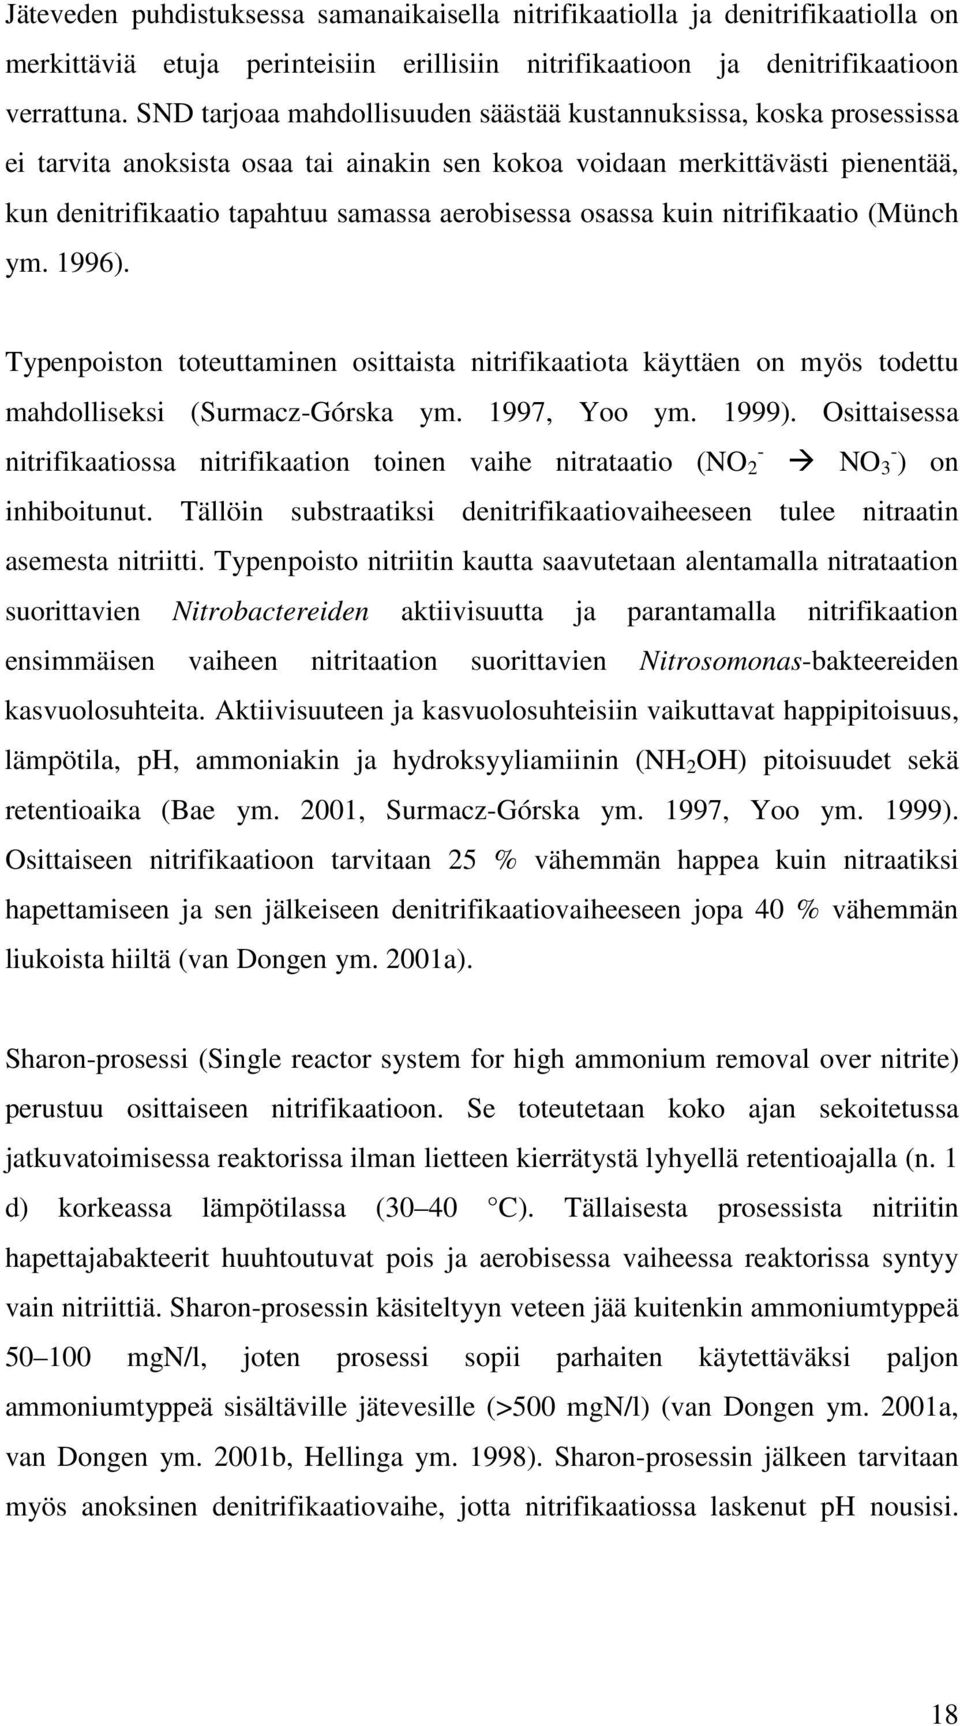 osassa kuin nitrifikaatio (Münch ym. 1996). Typenpoiston toteuttaminen osittaista nitrifikaatiota käyttäen on myös todettu mahdolliseksi (Surmacz-Górska ym. 1997, Yoo ym. 1999).